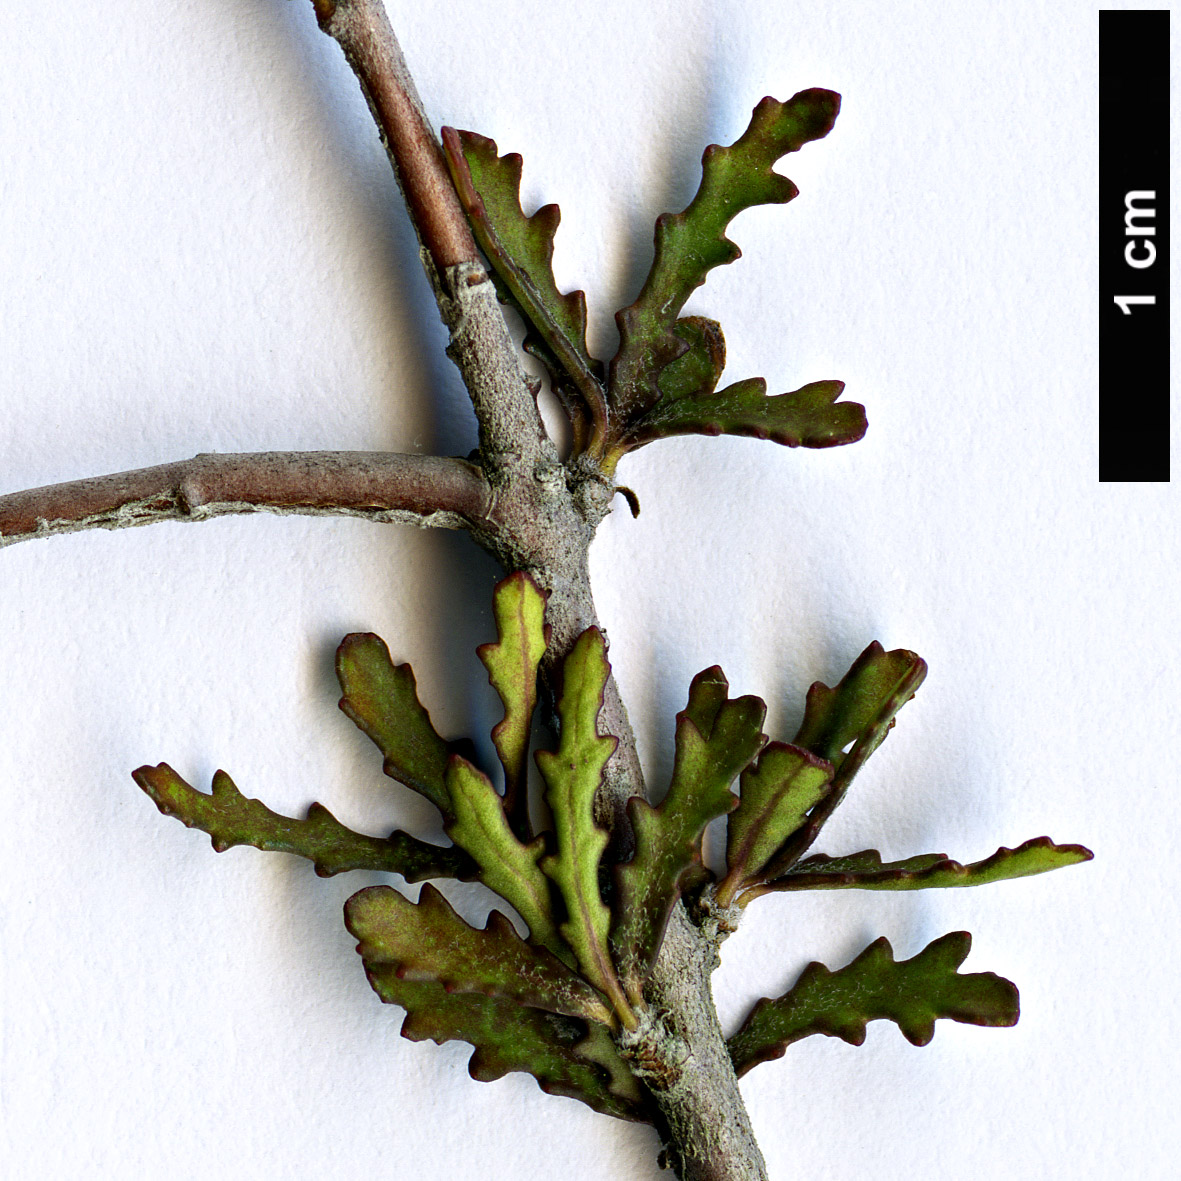 High resolution image: Family: Pittosporaceae - Genus: Pittosporum - Taxon: anomalum